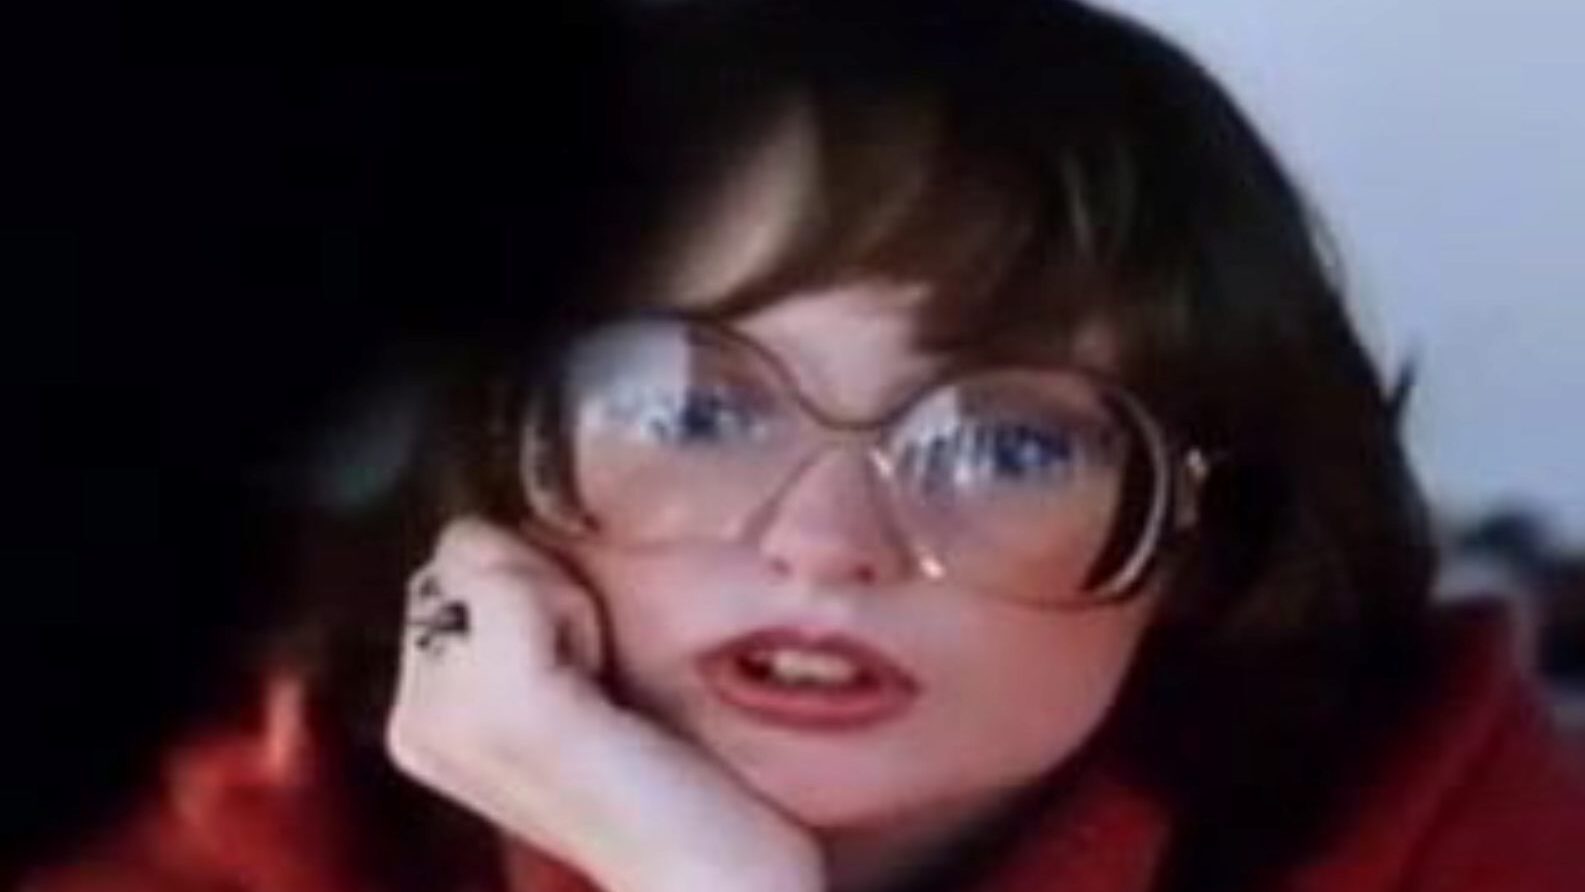 סאונד של אהבה 1981: סרטון פורנו צ'כי בחינם 28 - xhamster צפה של סאונד של אהבה 1981 סרט שפופרת מזוין בחינם לכולם על xhamster, עם המיטב של הארדקור הצ'כי ופרקי פורנו מדהימים.